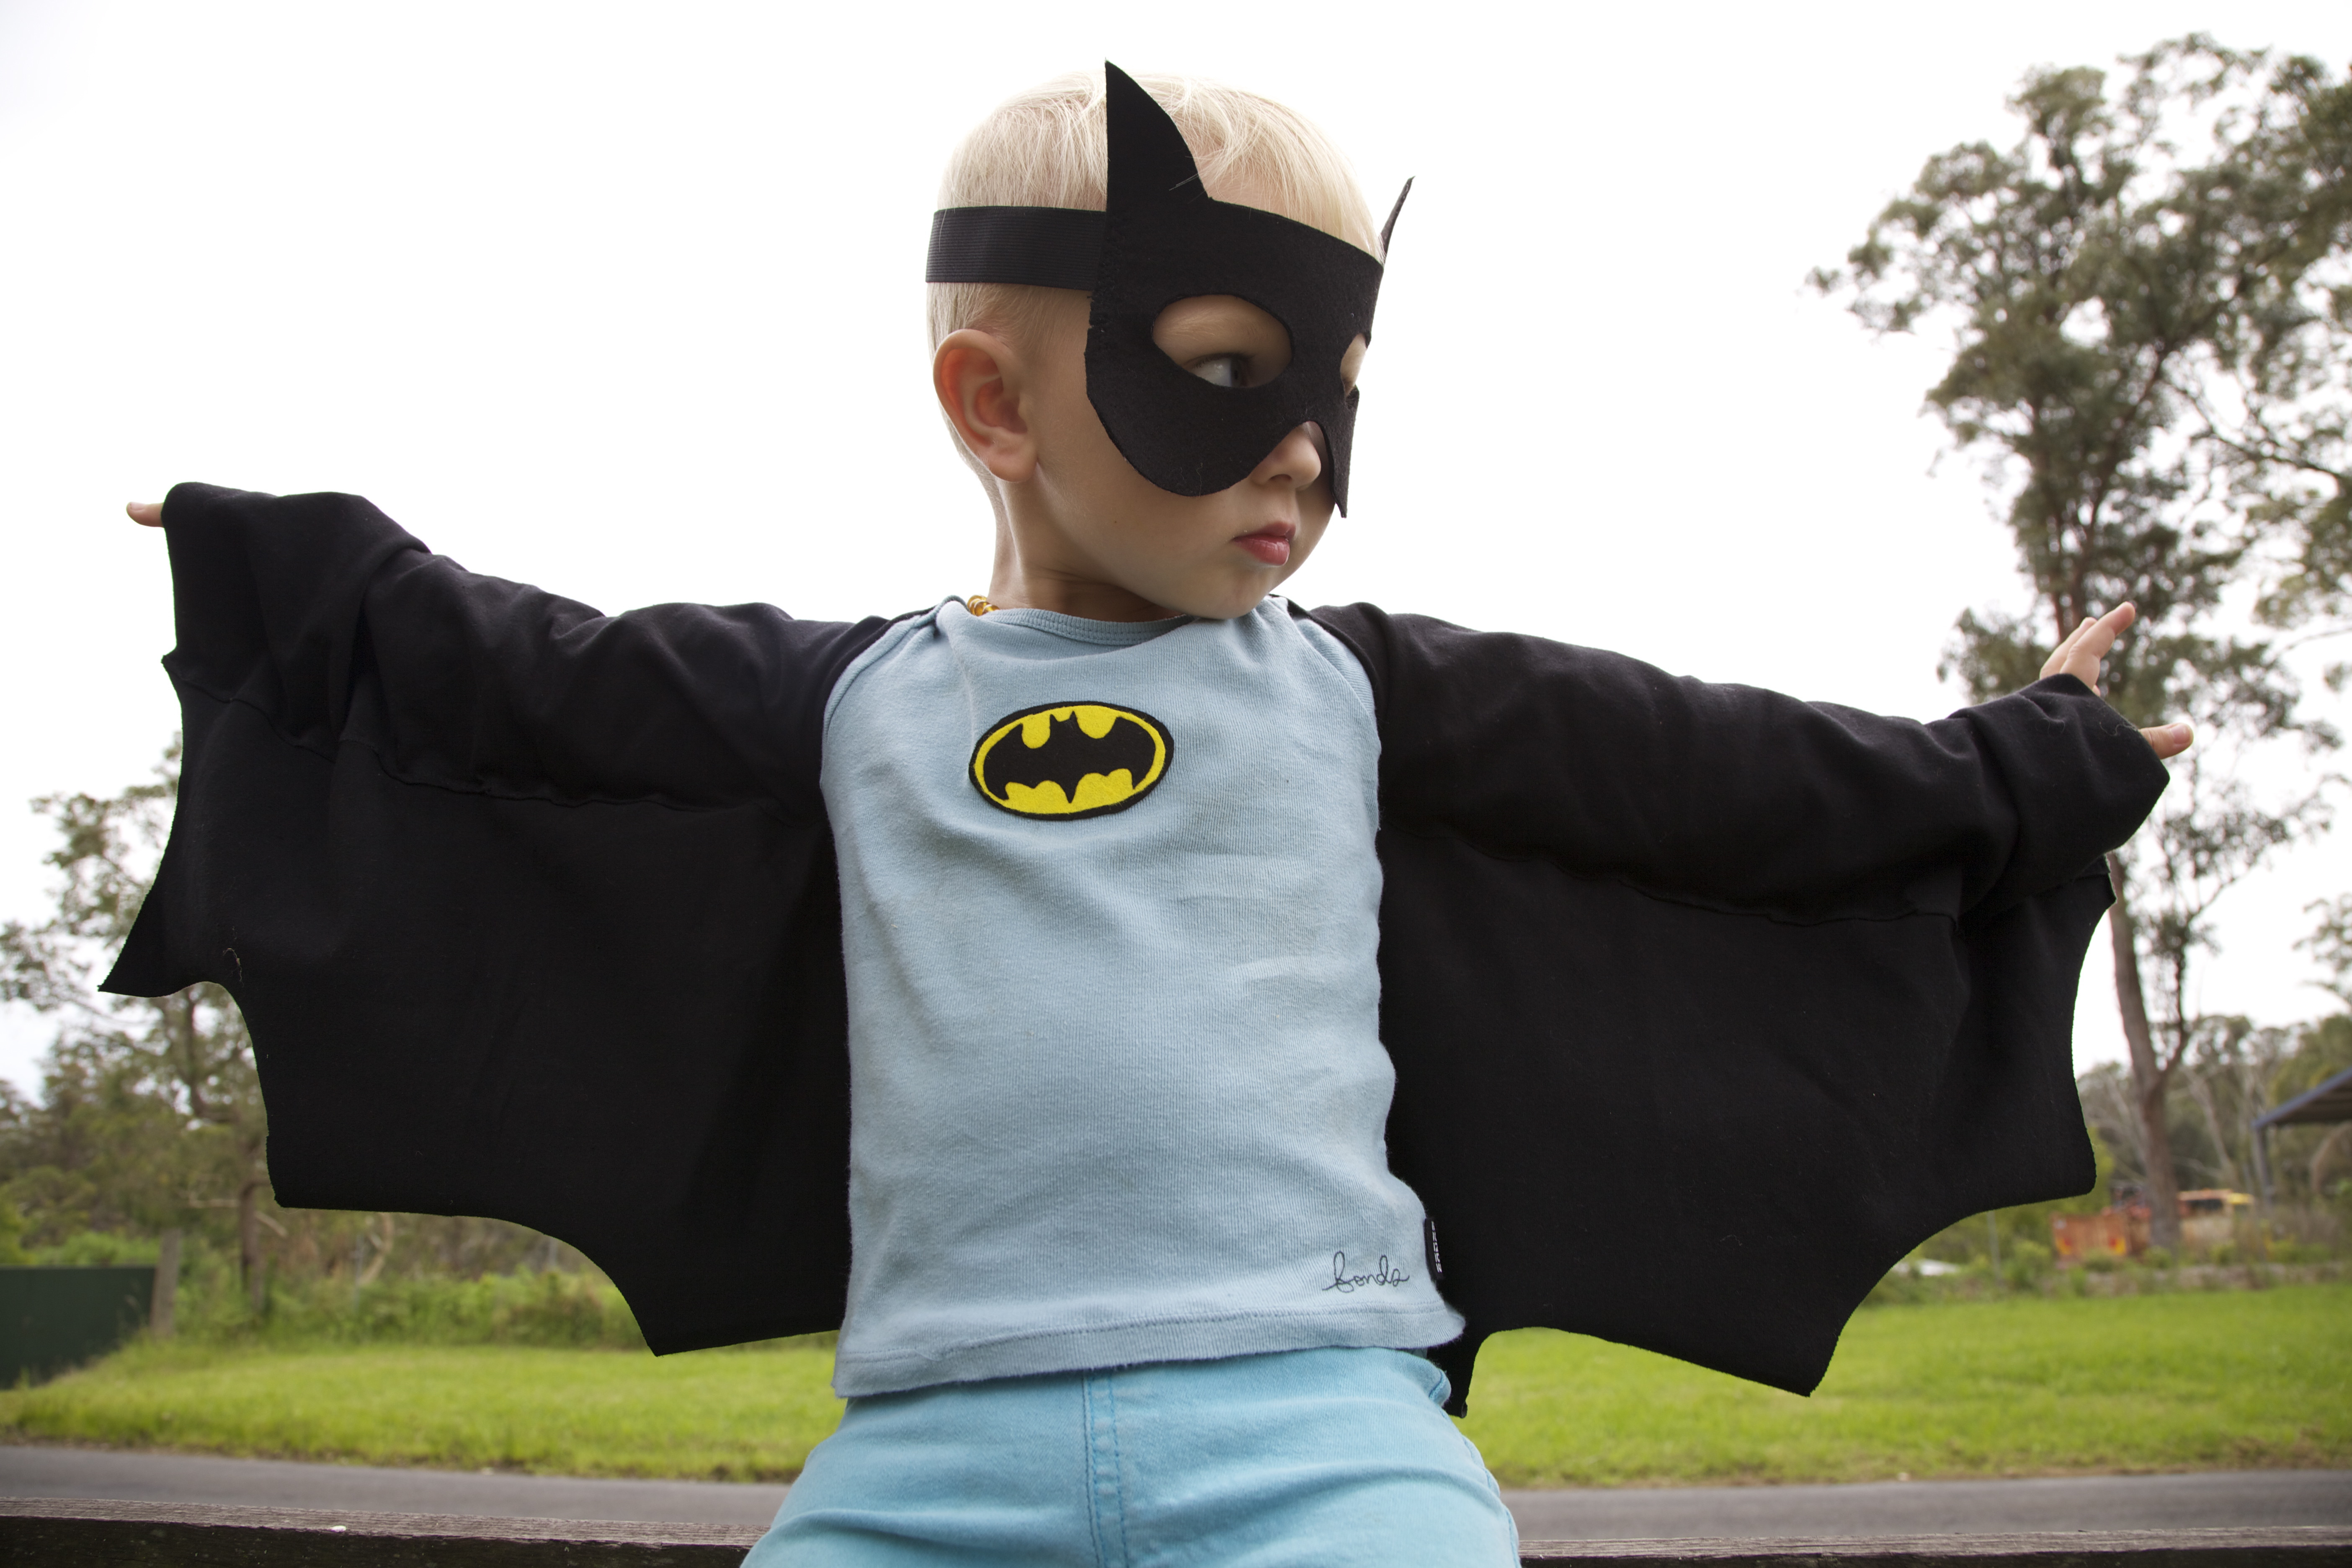 DIY Batman Costume Toddler
 Homemade Batman Costume